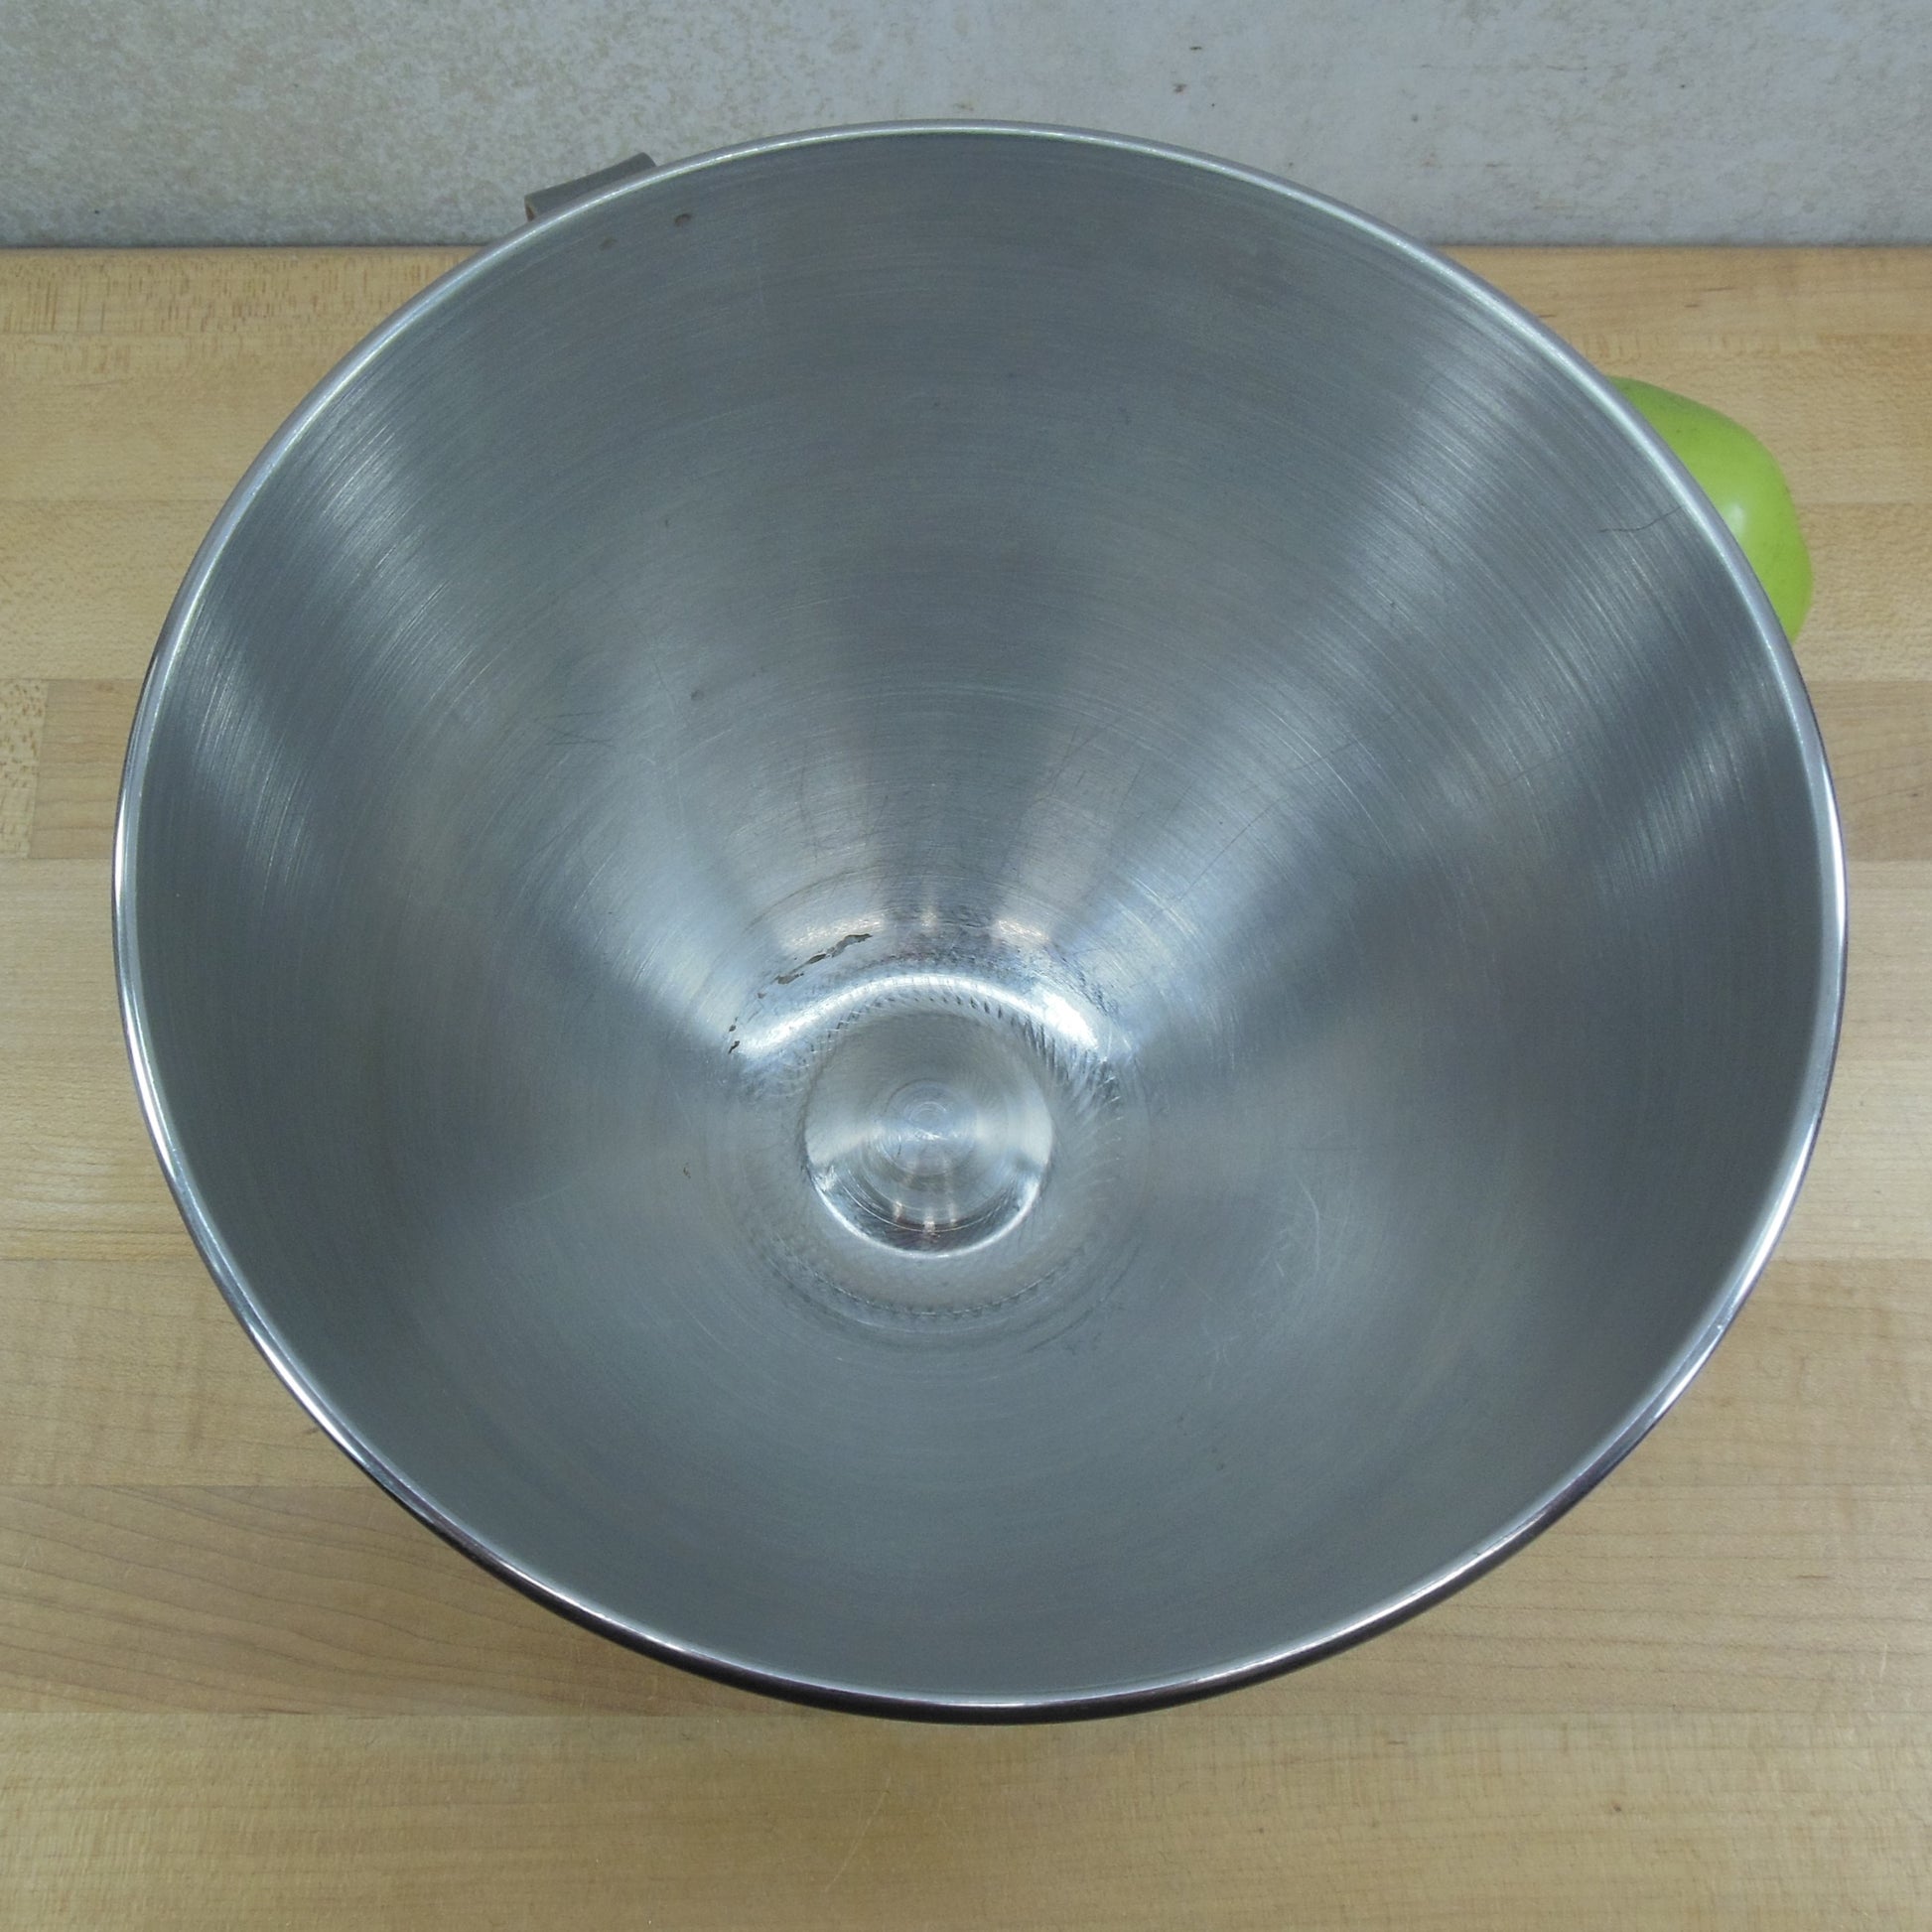 KitchenAid K45 Stainless Steel 4.5 Quart Stand Mixer Bowl Korea